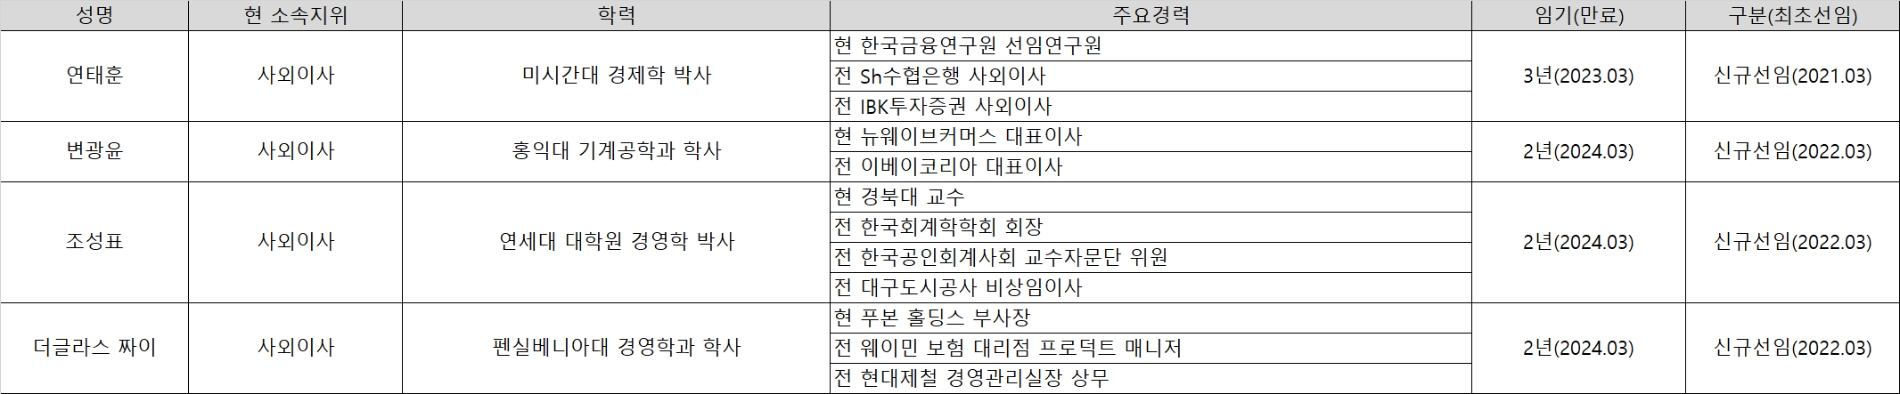 현대카드 사외이사 멤버. /사진제공=한국금융신문